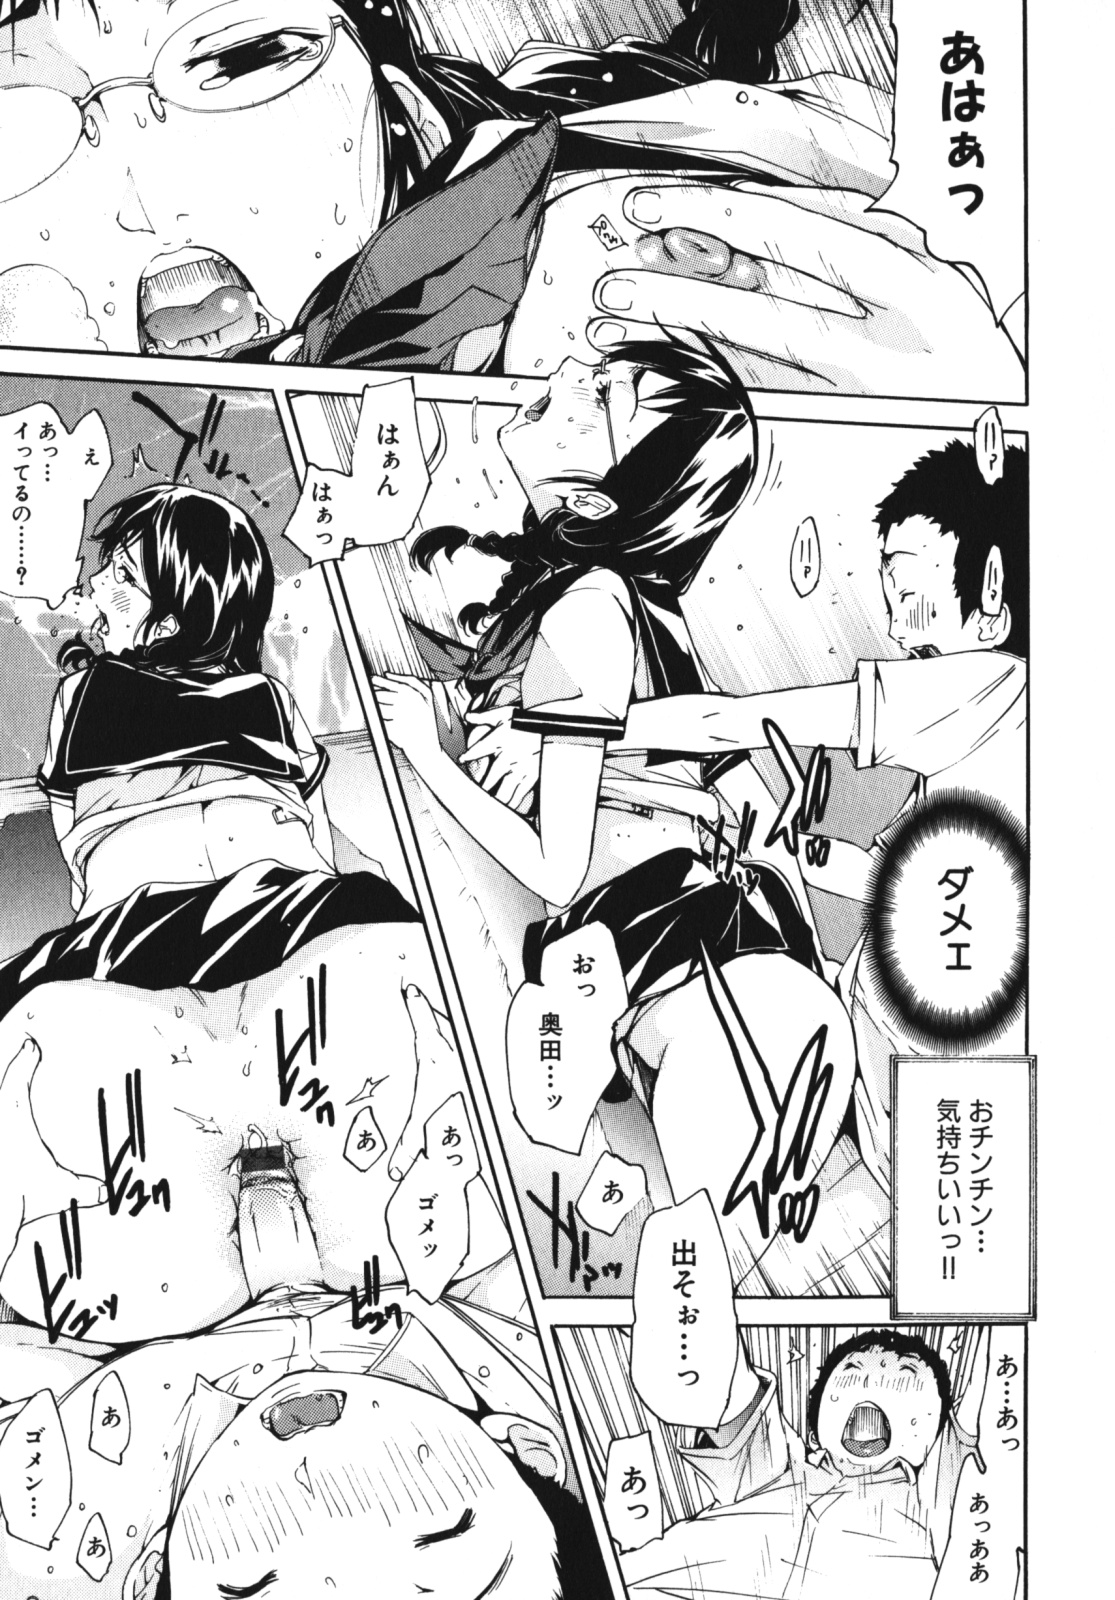 [Anthology] Geki Yaba Vol.4 - Namade Shitene page 40 full